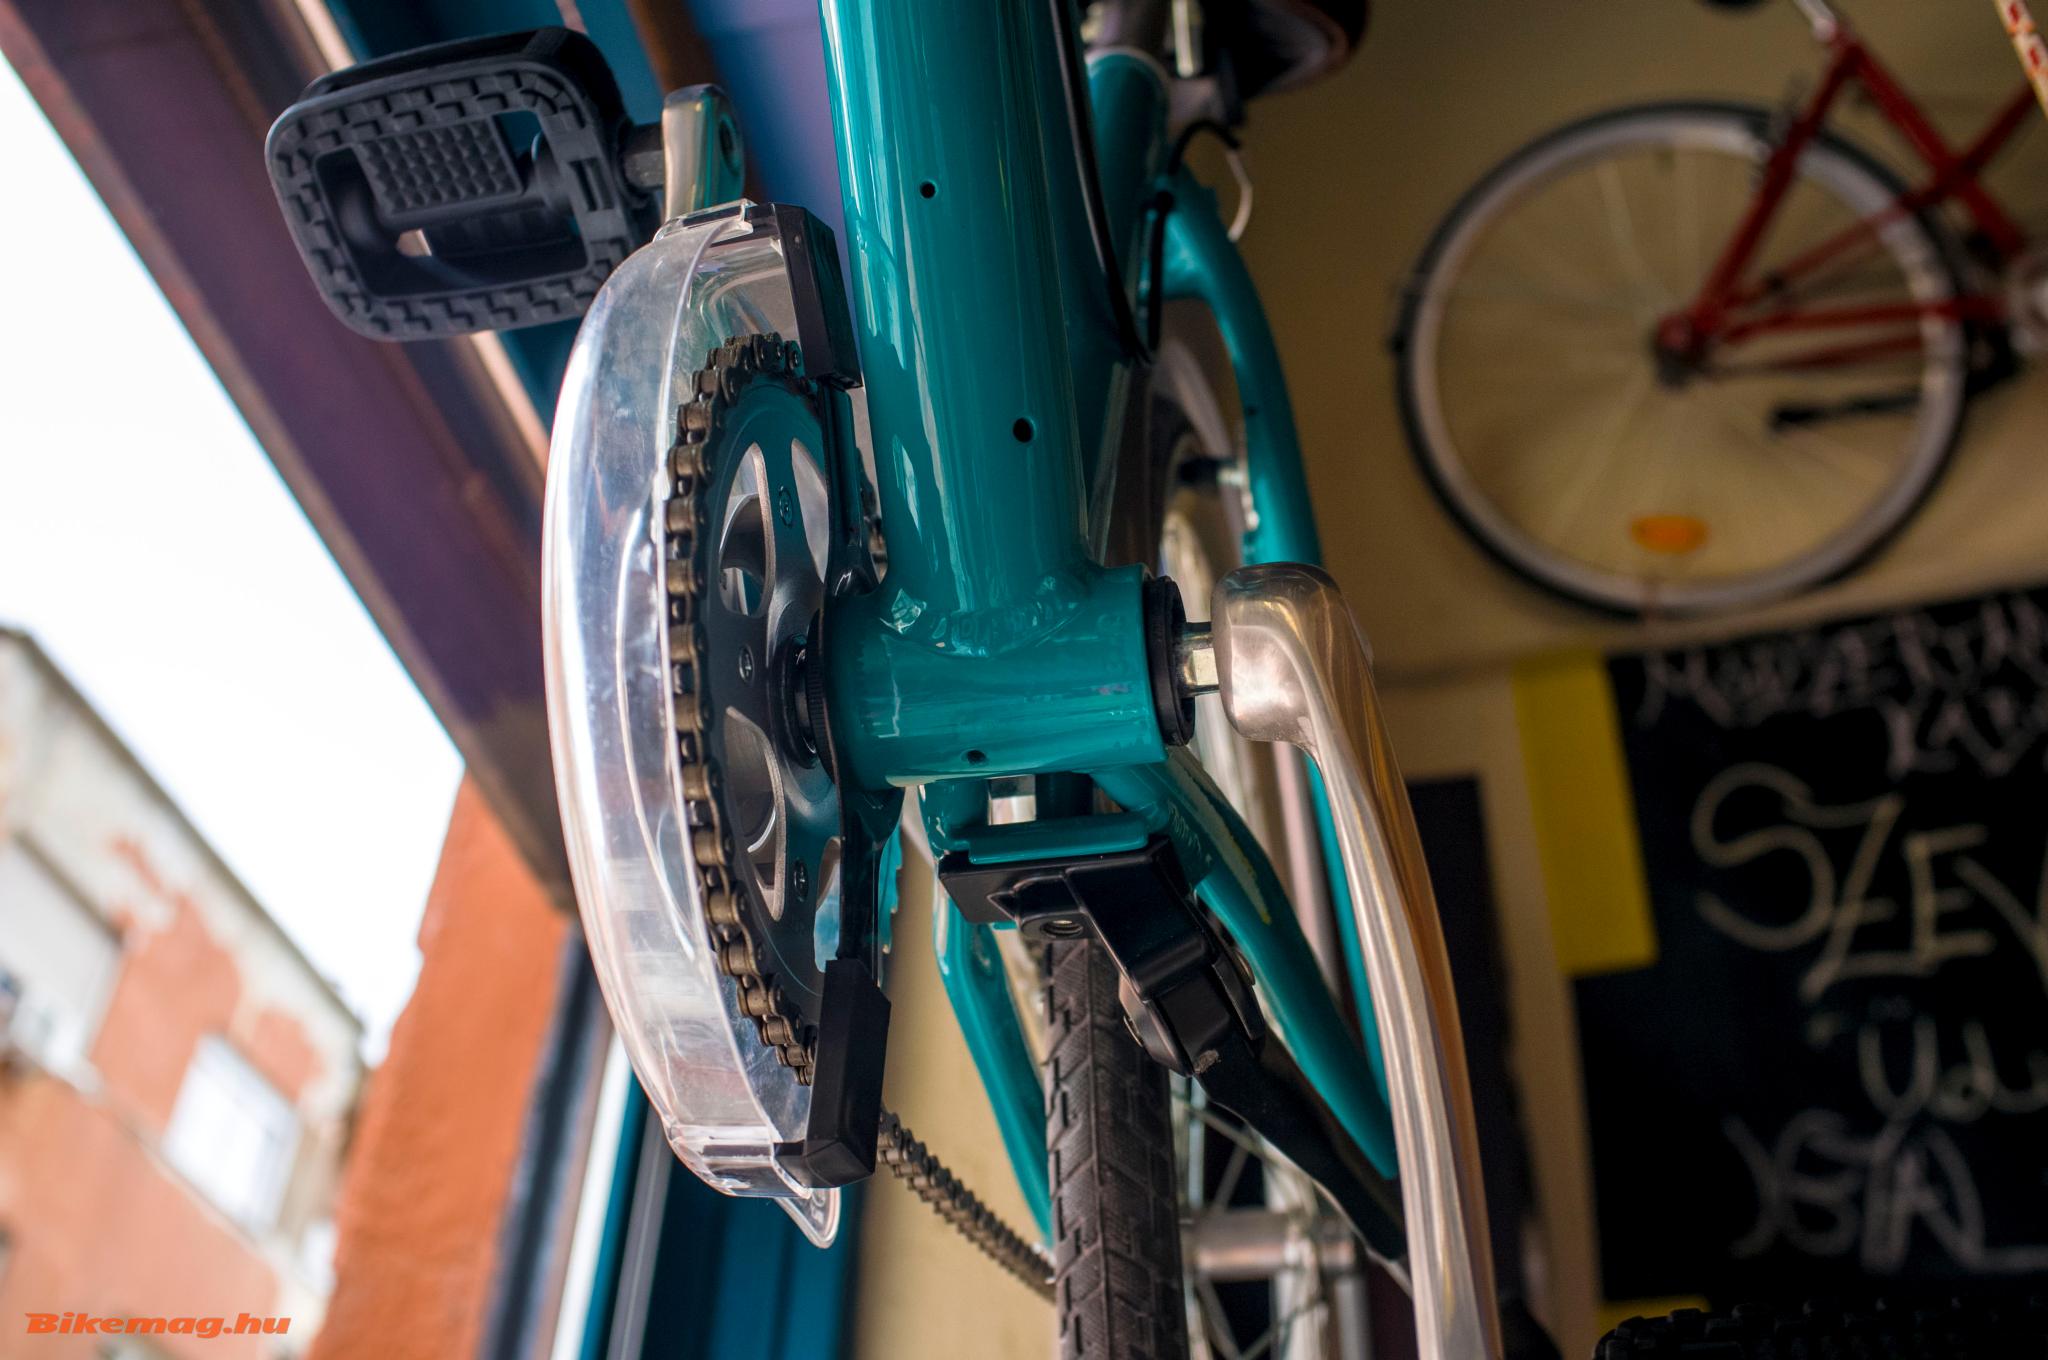 NőiVáz "Mókából" és a Módszertani Kabinet | Kerékpár magazin - Bikemag